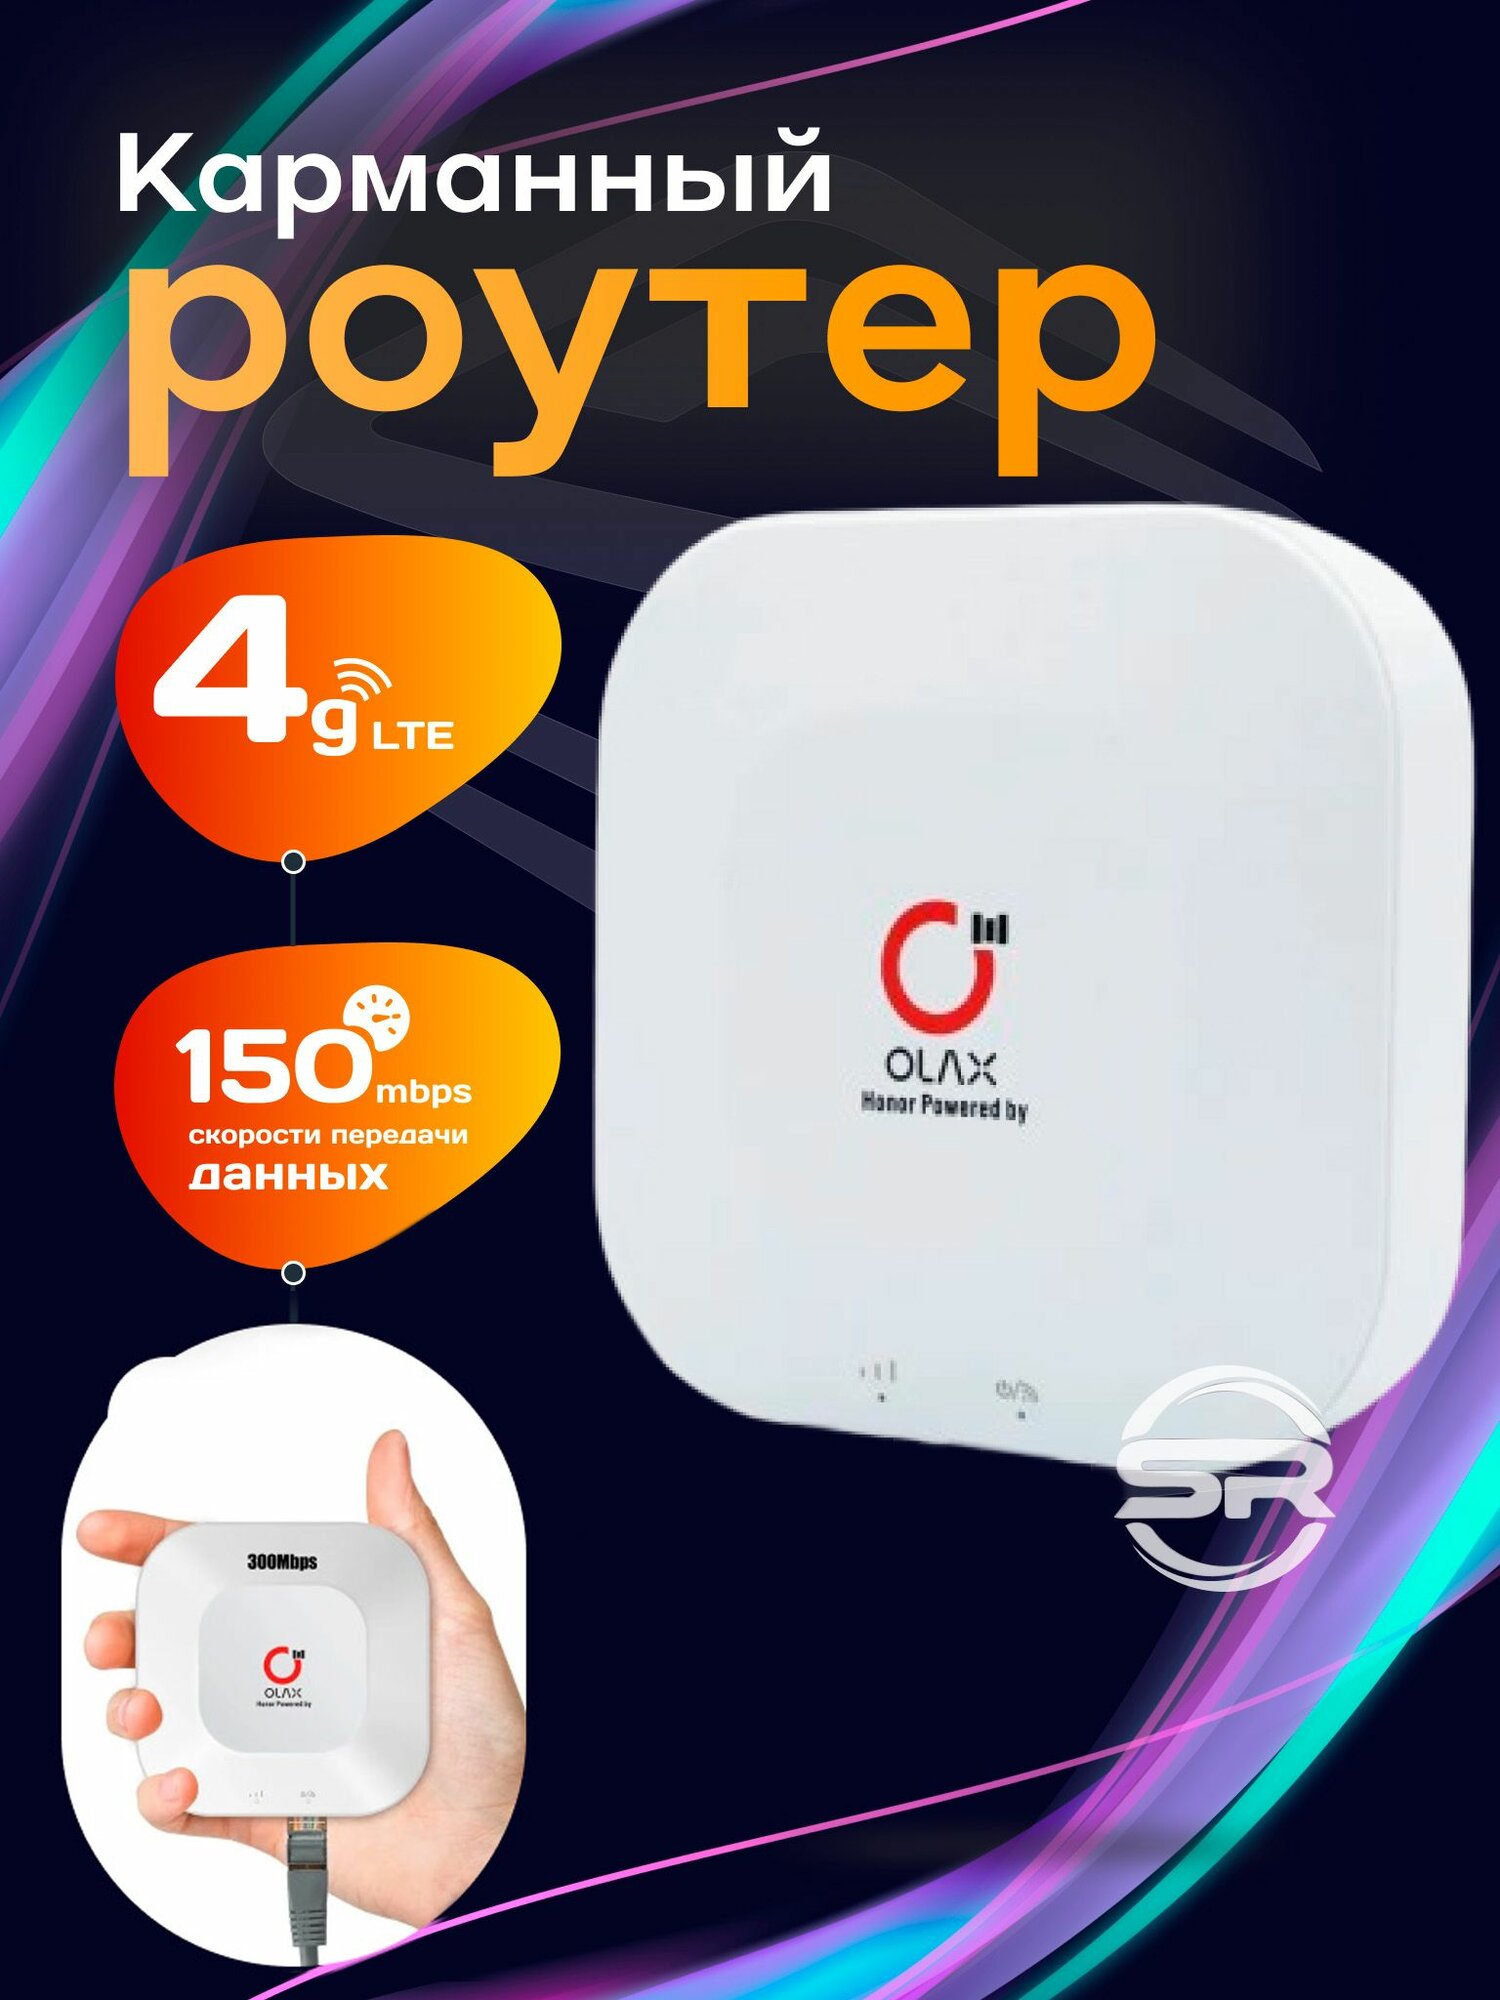 Карманный Wi-Fi роутер OLAX MT30 с портом LAN АКБ на 4000 мАч / NFC маршрутизатор Wi-Fi 4G